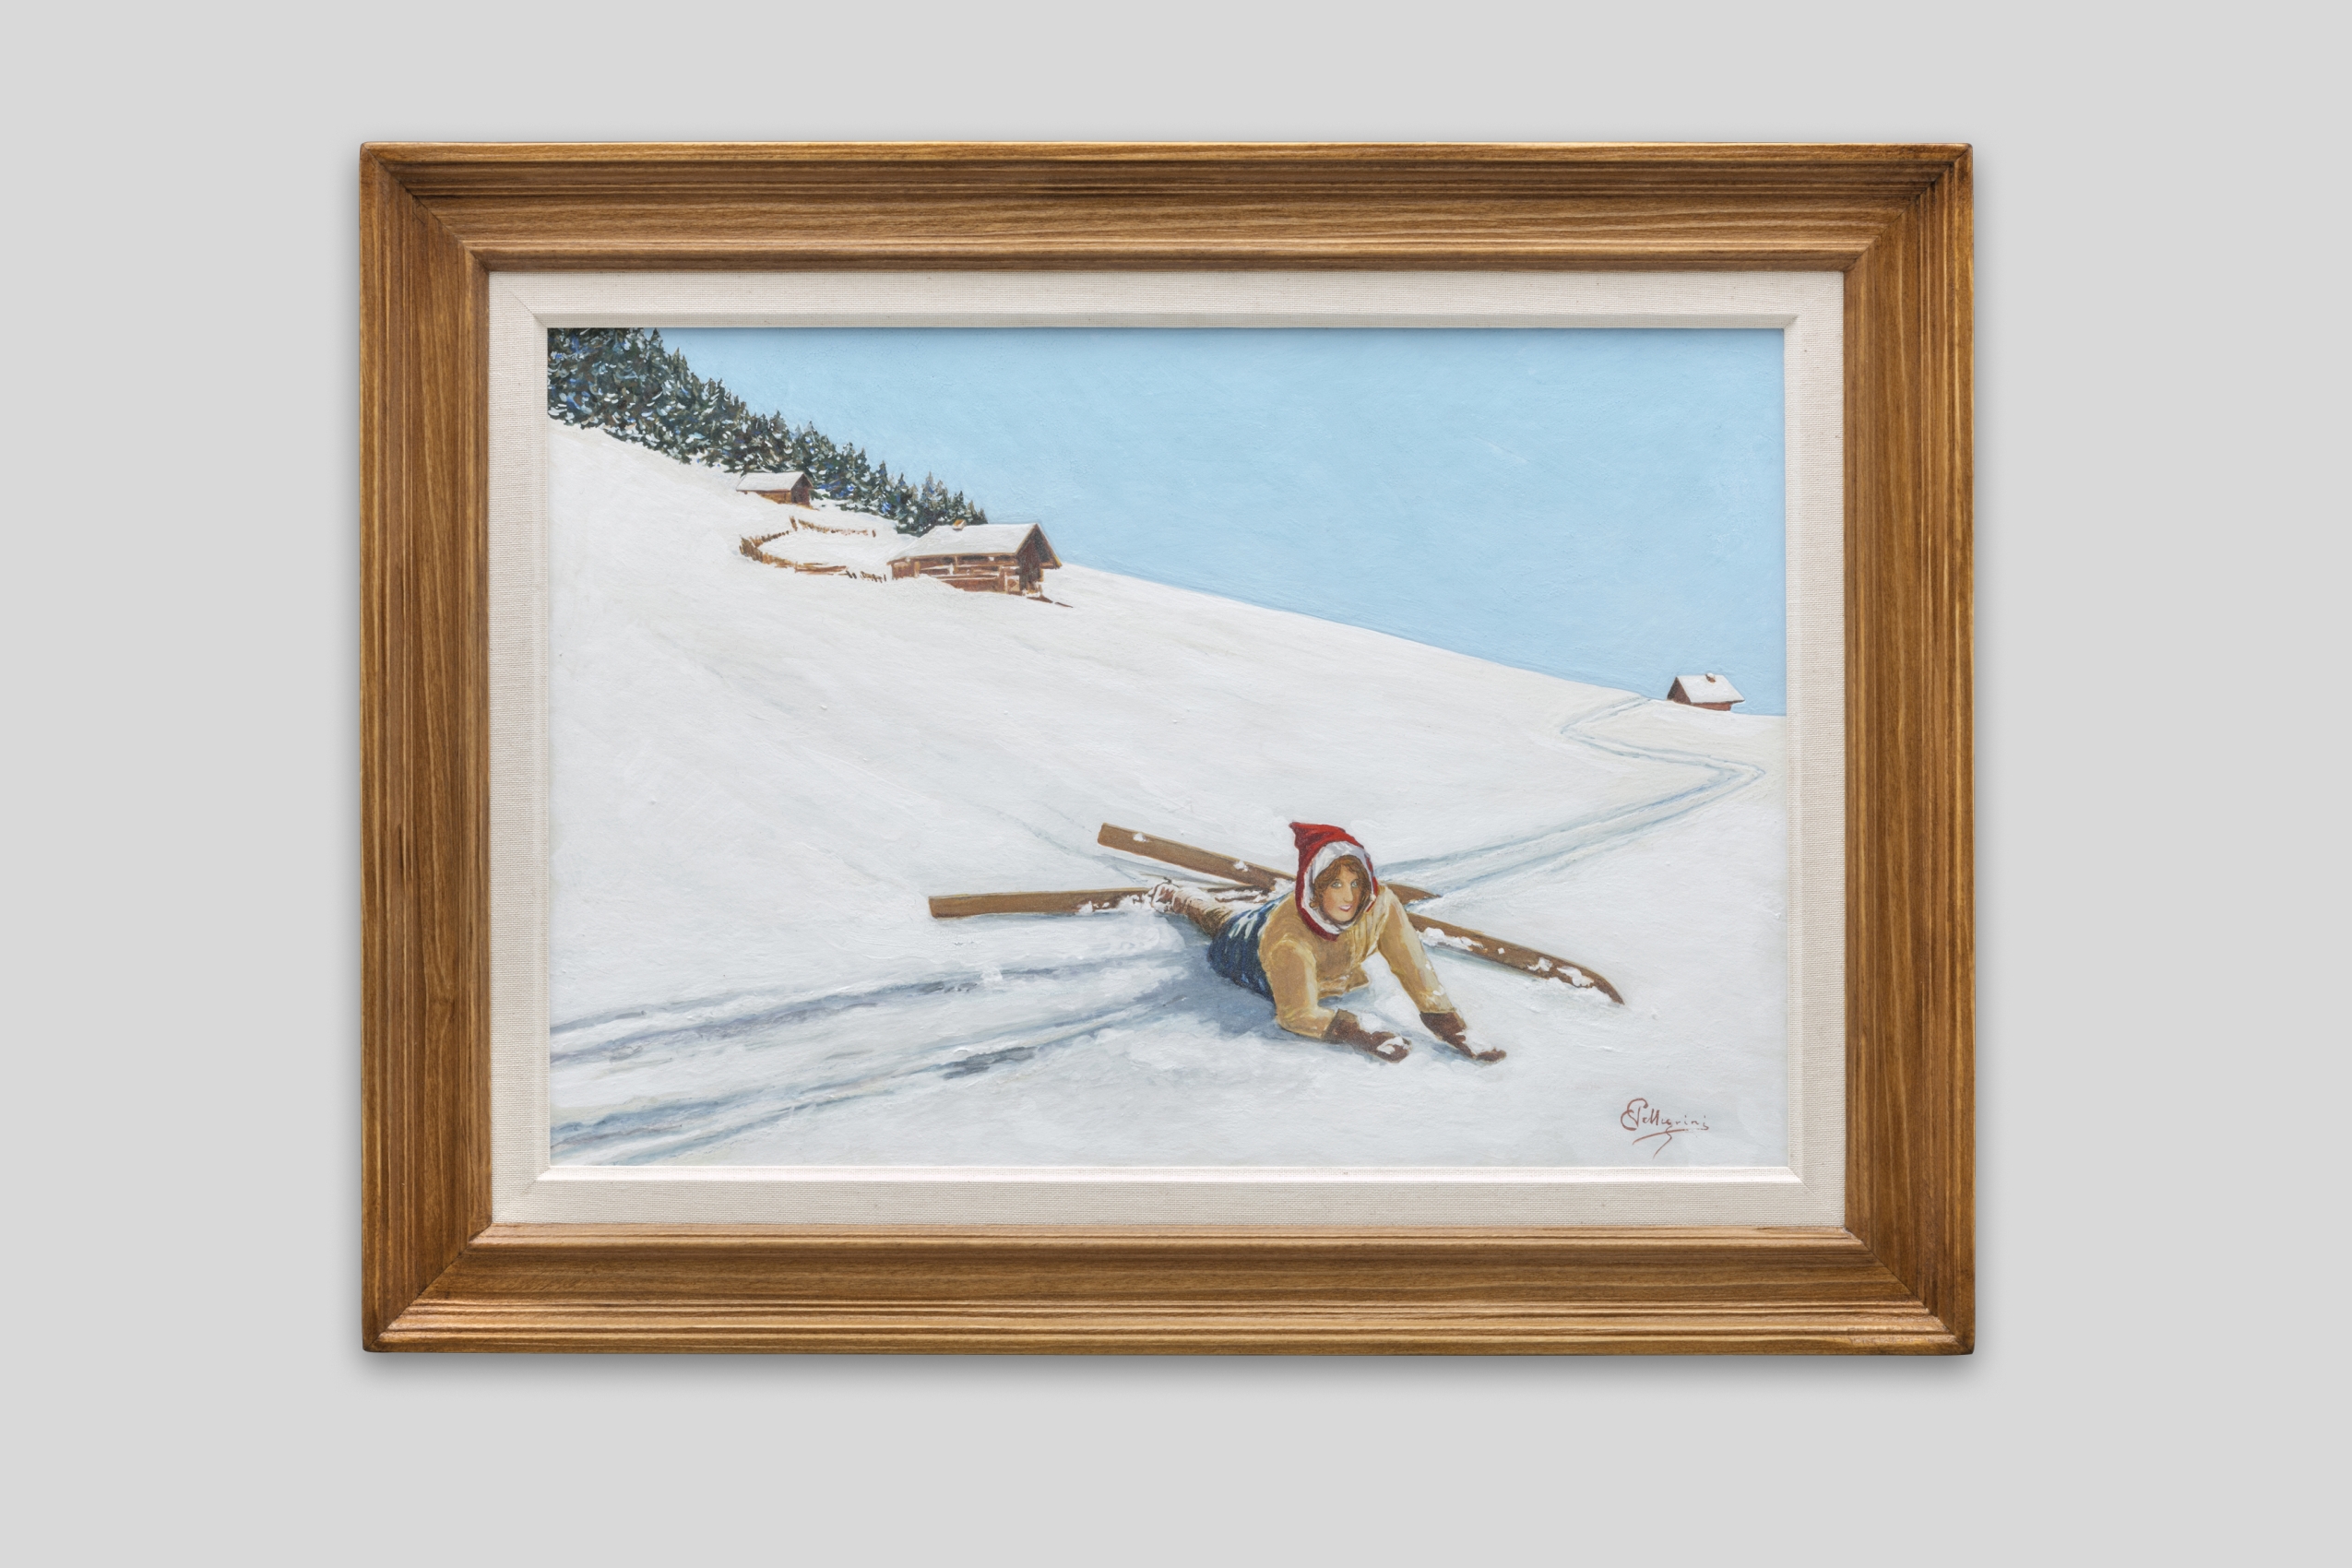 Pellegrini Carlo - Tomber dans la neige fraîche - Encadré